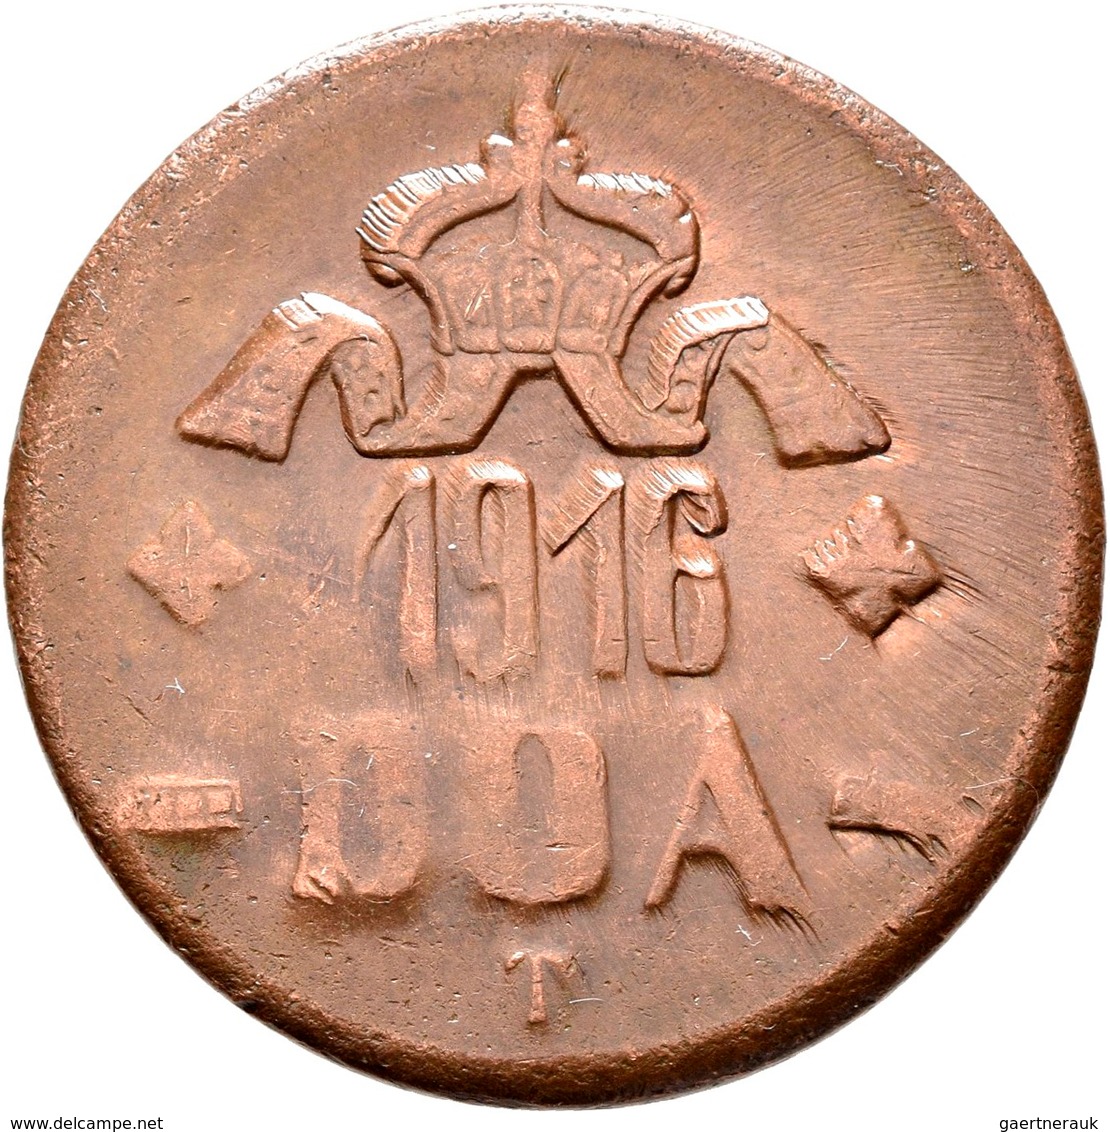 Deutsch-Ostafrika: Tabora, DOA: Lot 6 Münzen; 20 Heller 1916 T (4x) und 5 Heller 1616 T, zaponiert,